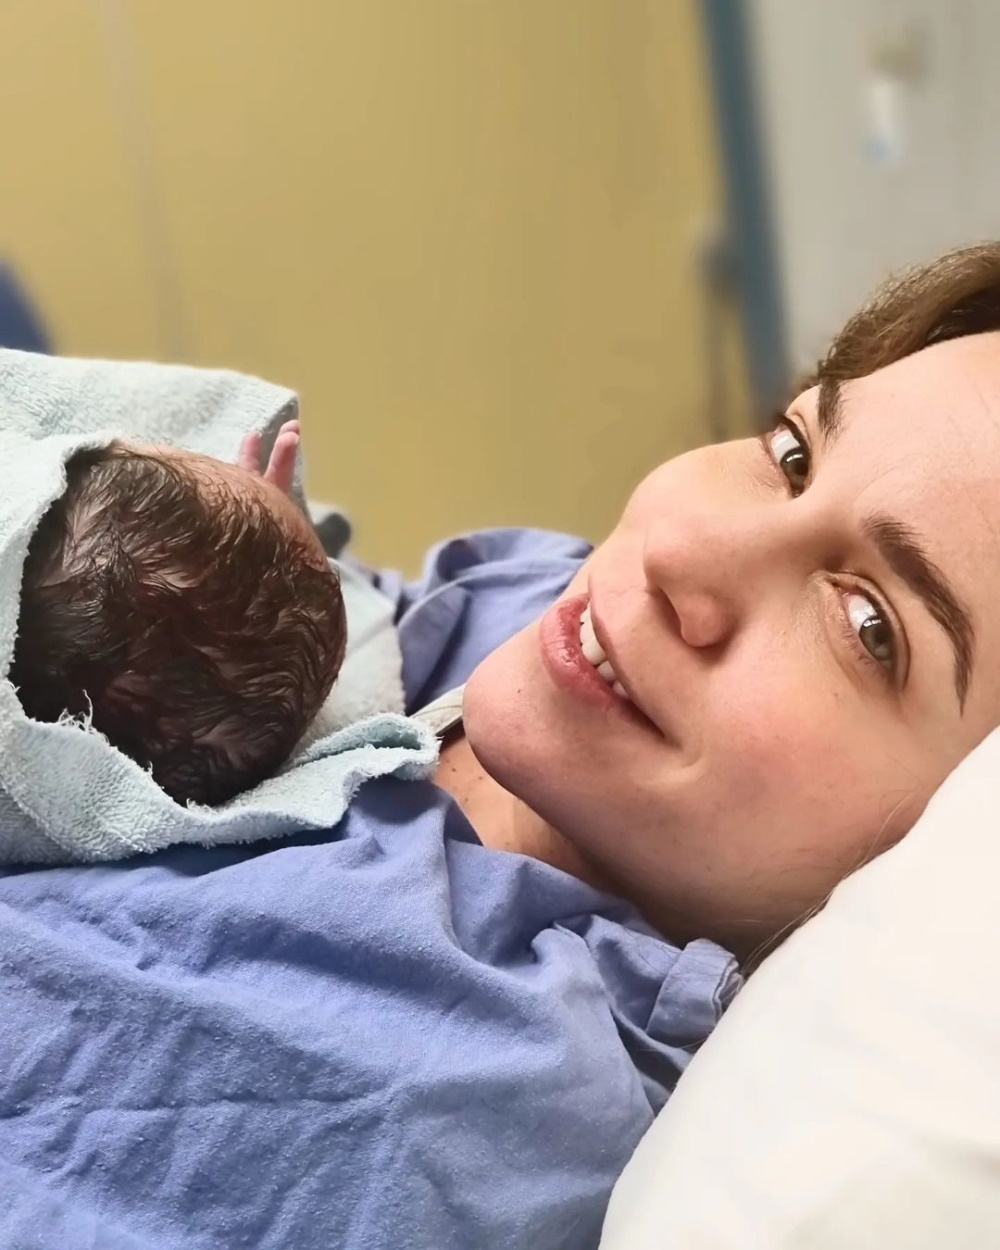 Η Κατερίνα Στικούδη κρατά στην αγκαλιά της τον νεογέννητο γιο της, Νικόλα λίγες στιγμές αφότου ήρθε στη ζωή.